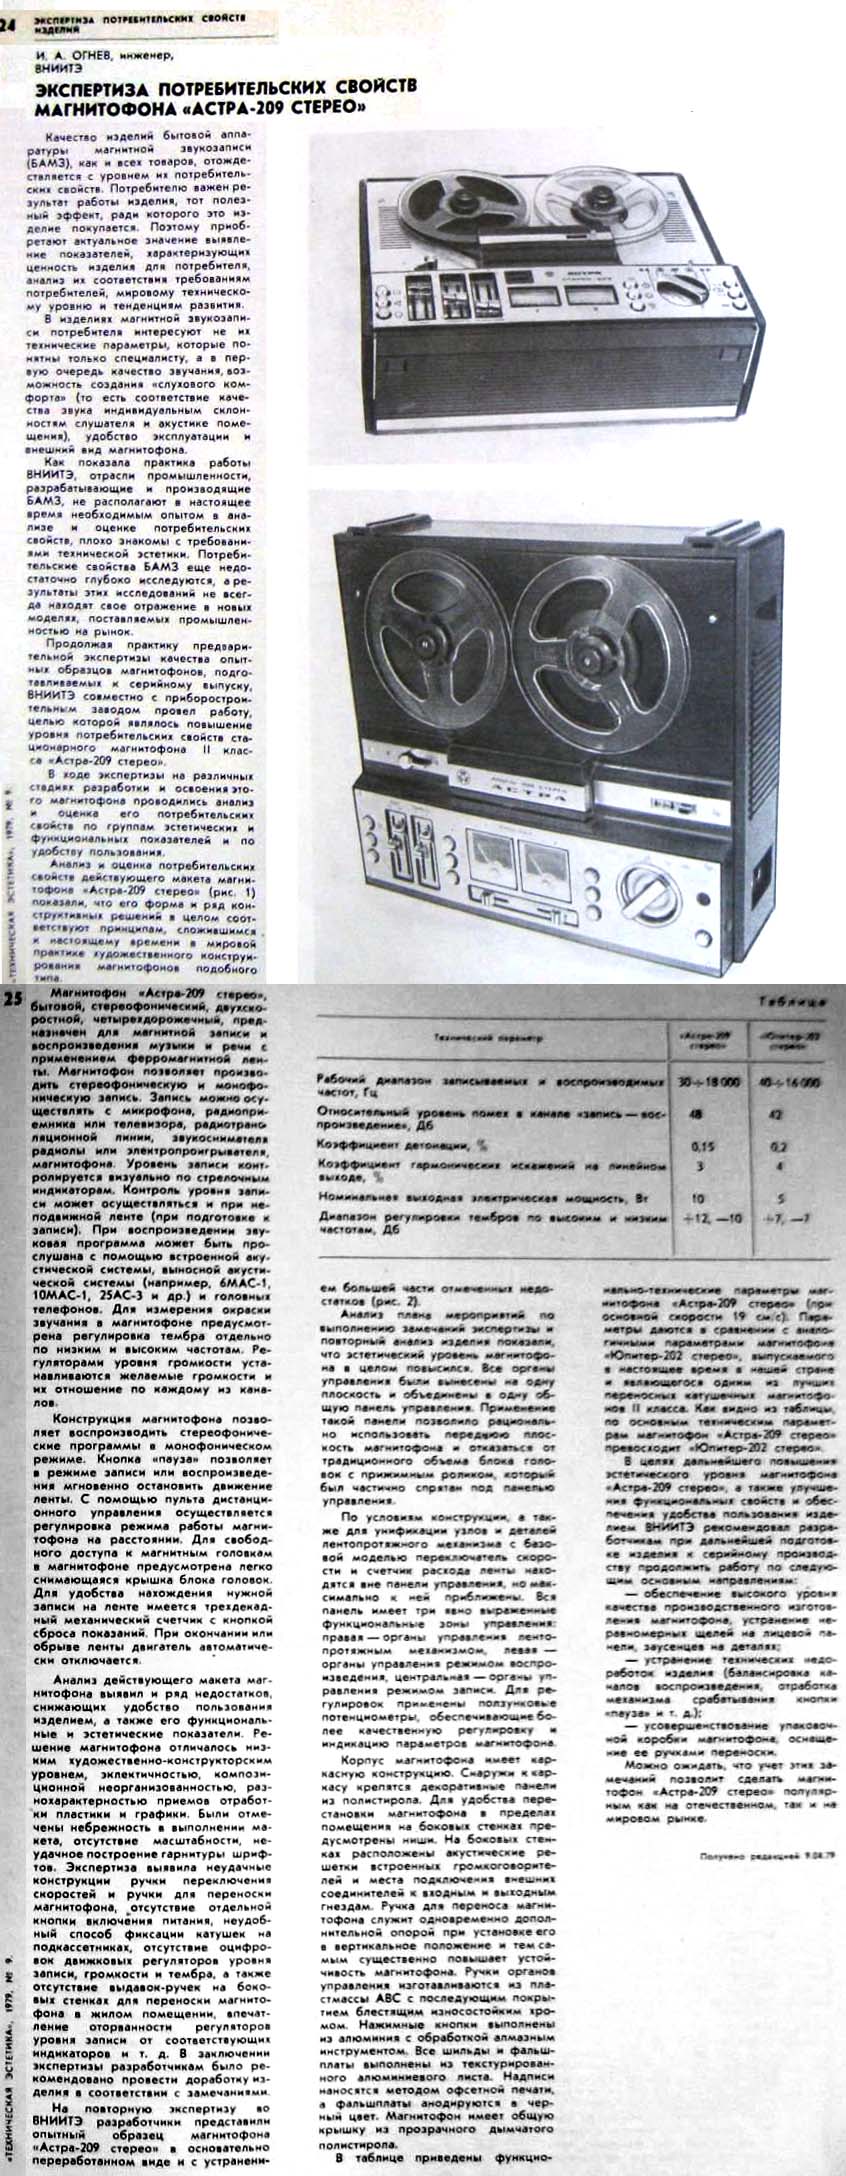 Журнал "Техническая Эстетика" обзор катушечного магнитофона